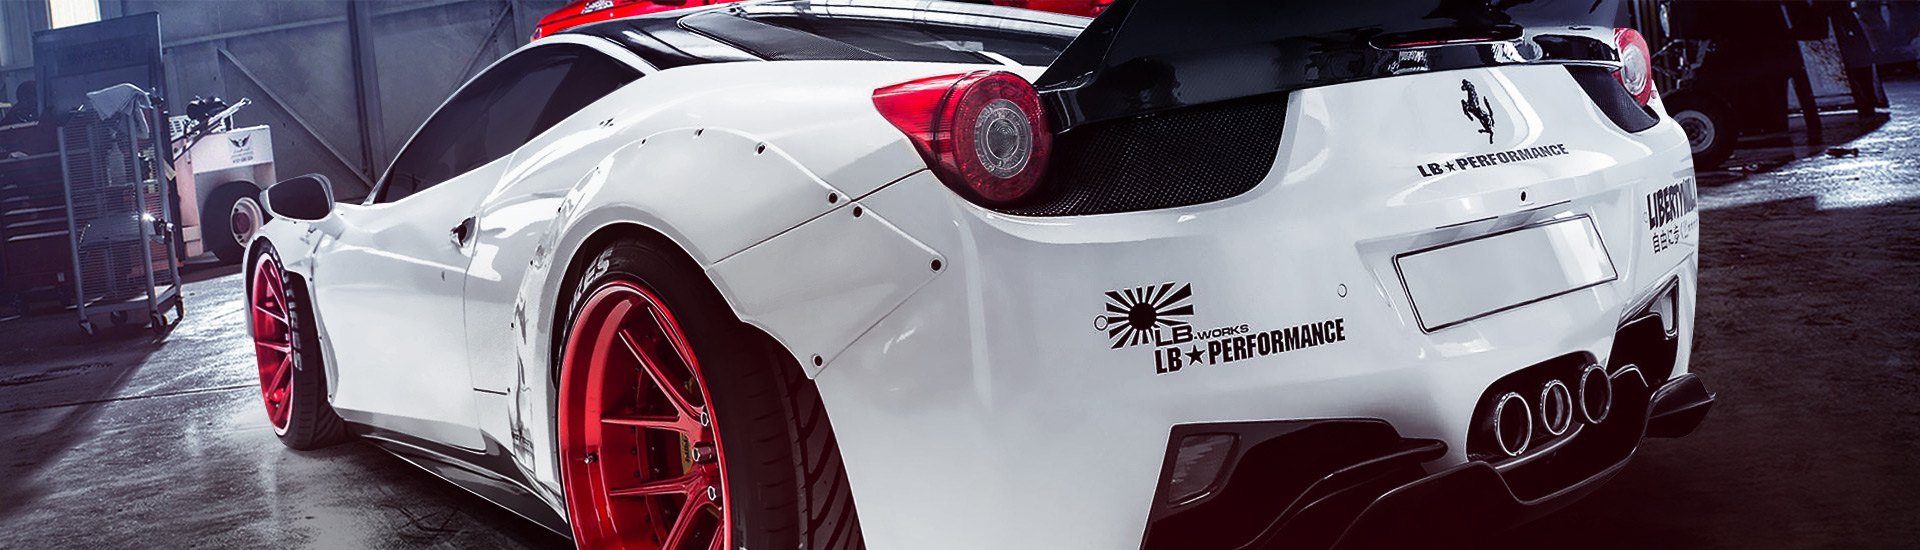 Universal Body Kit Lip Splitter Spoiler for Lincoln Lotus Air Lip Carbon Fi...